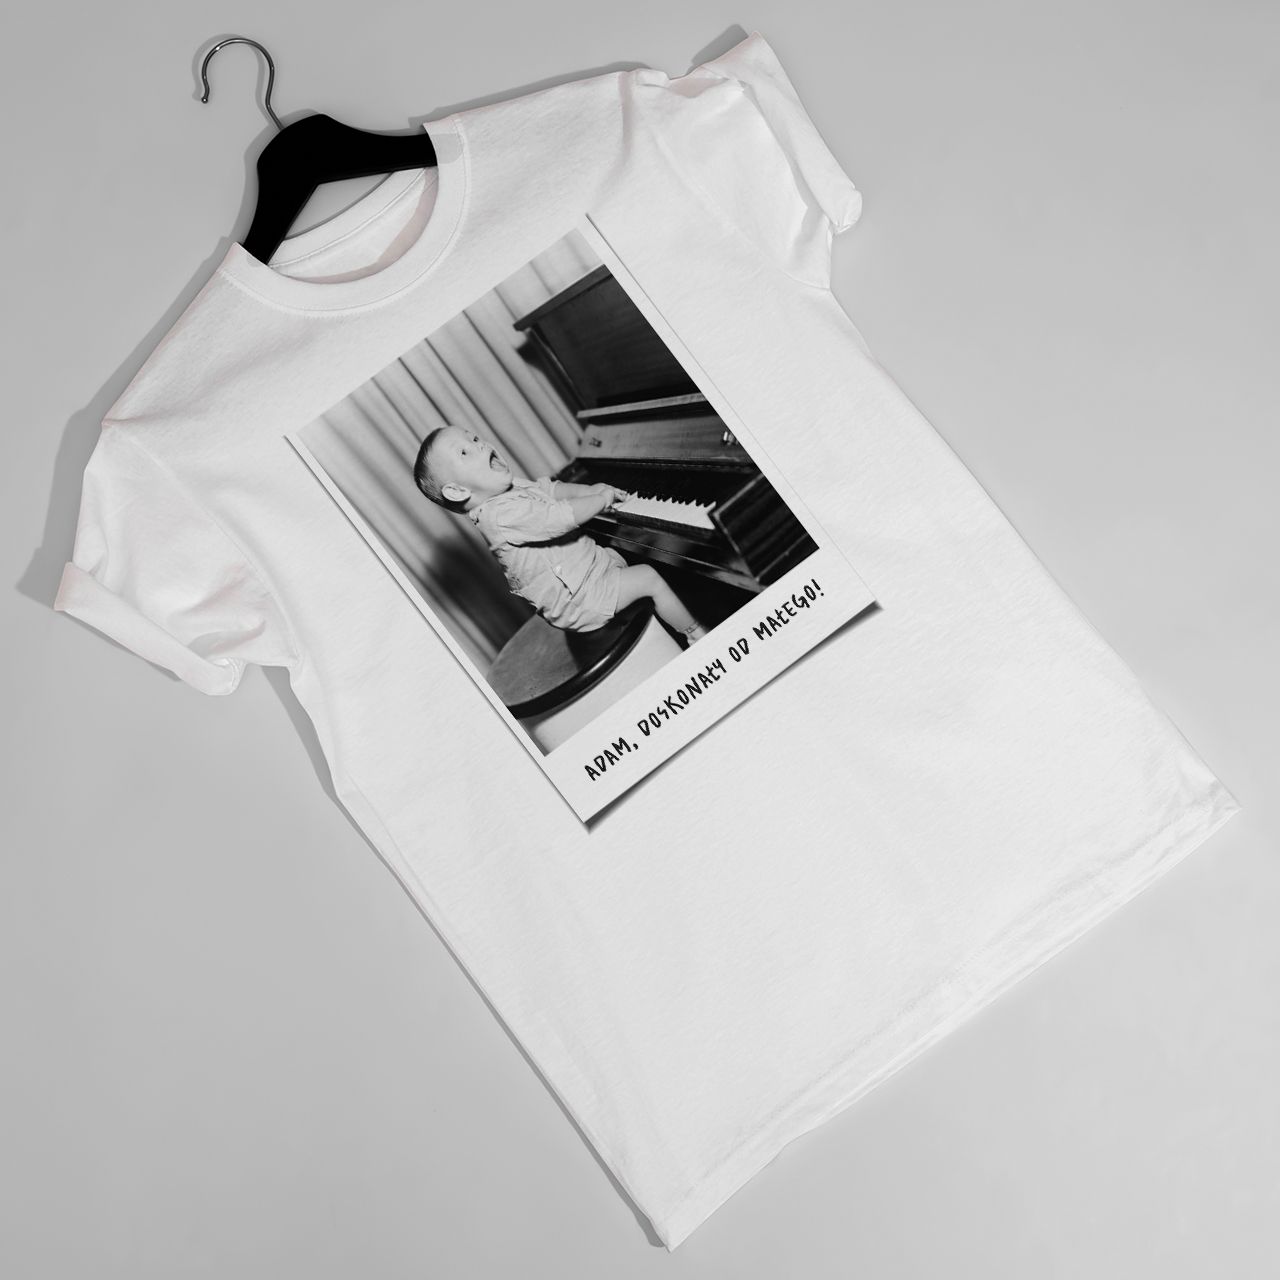 Męska koszulka ze zdjęciem DUŻA FOTKA t-shirt urodzinowy - XL